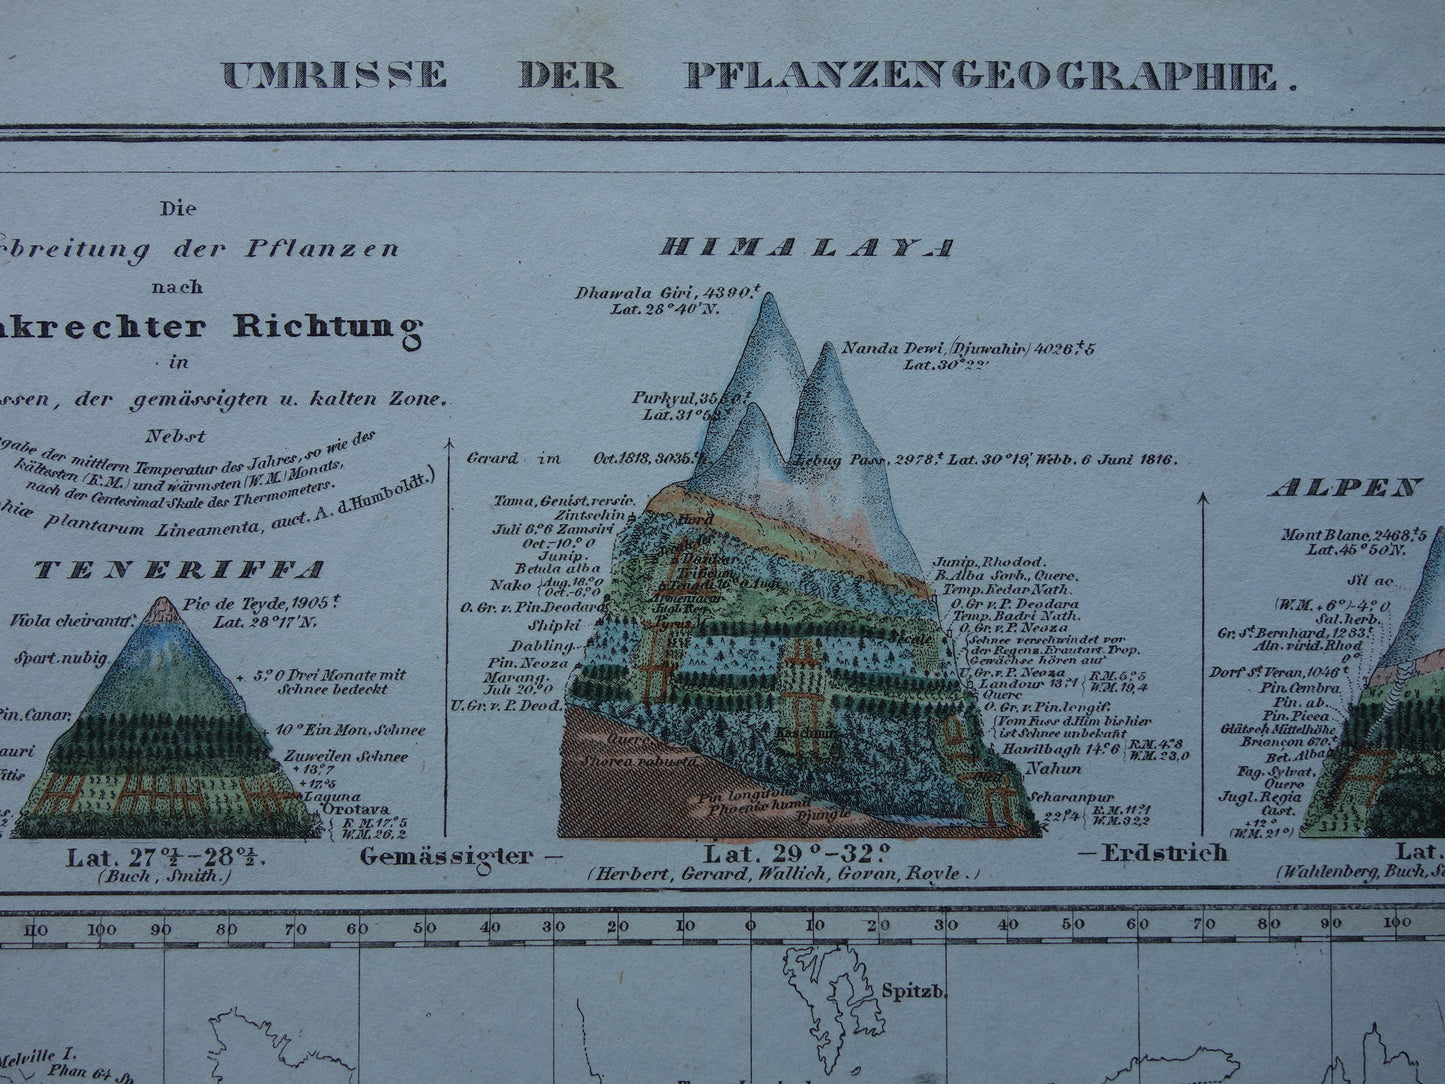 BOTANISCHE kaart van de wereld uit 1850 oude handgekleurde fytogeografie wereldkaart - bergtoppen Himalaya Alpen vintage print